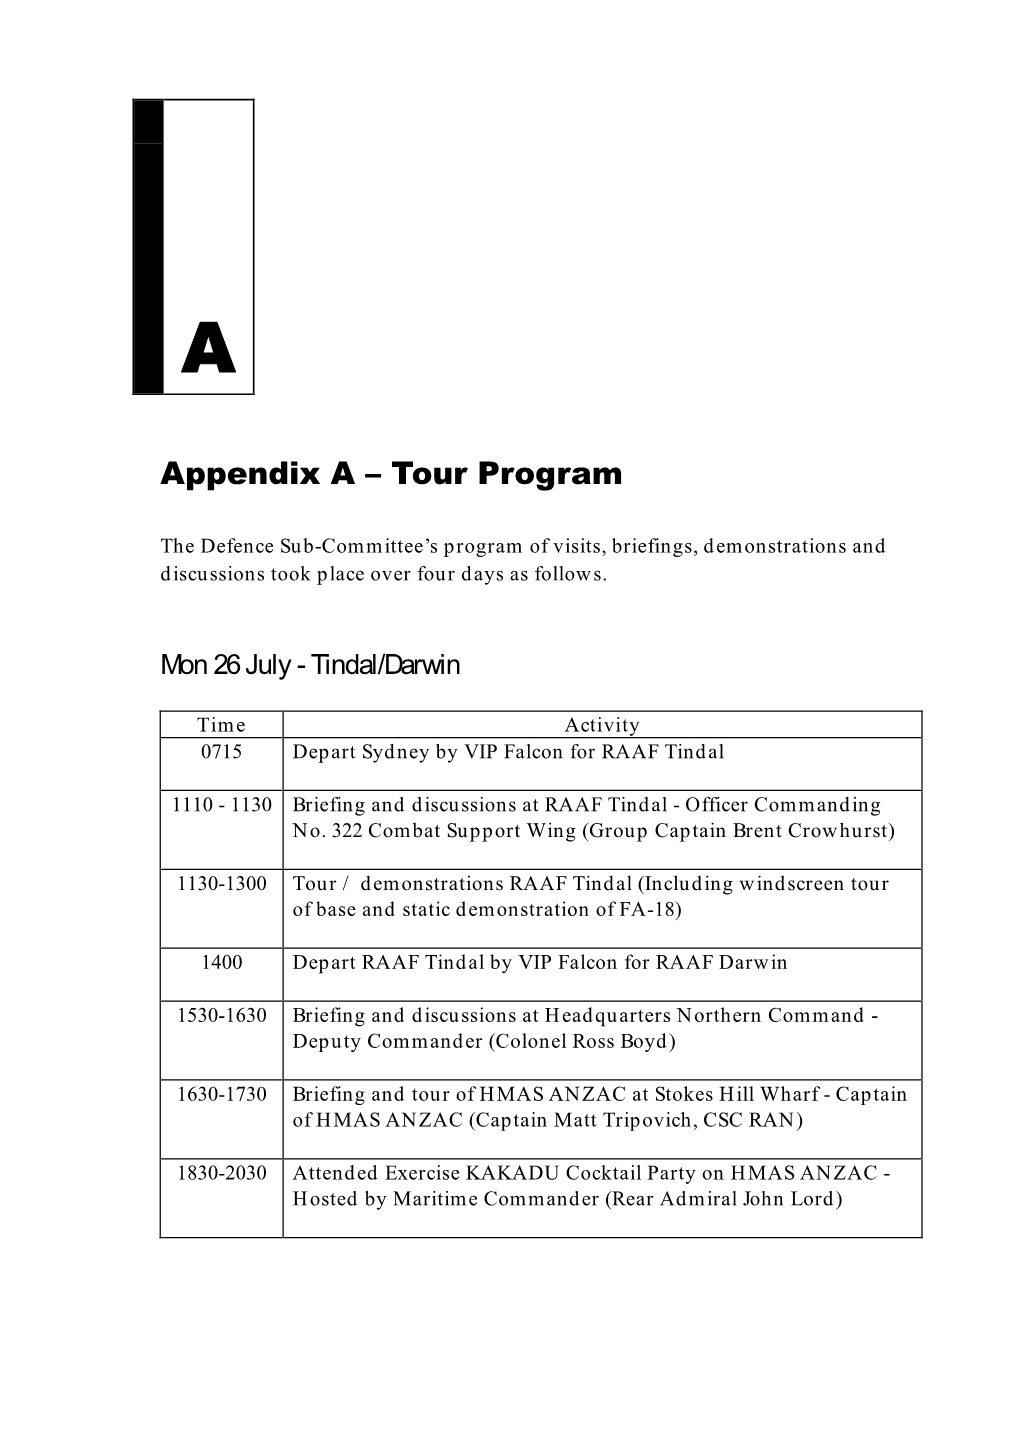 Appendix A: Tour Program